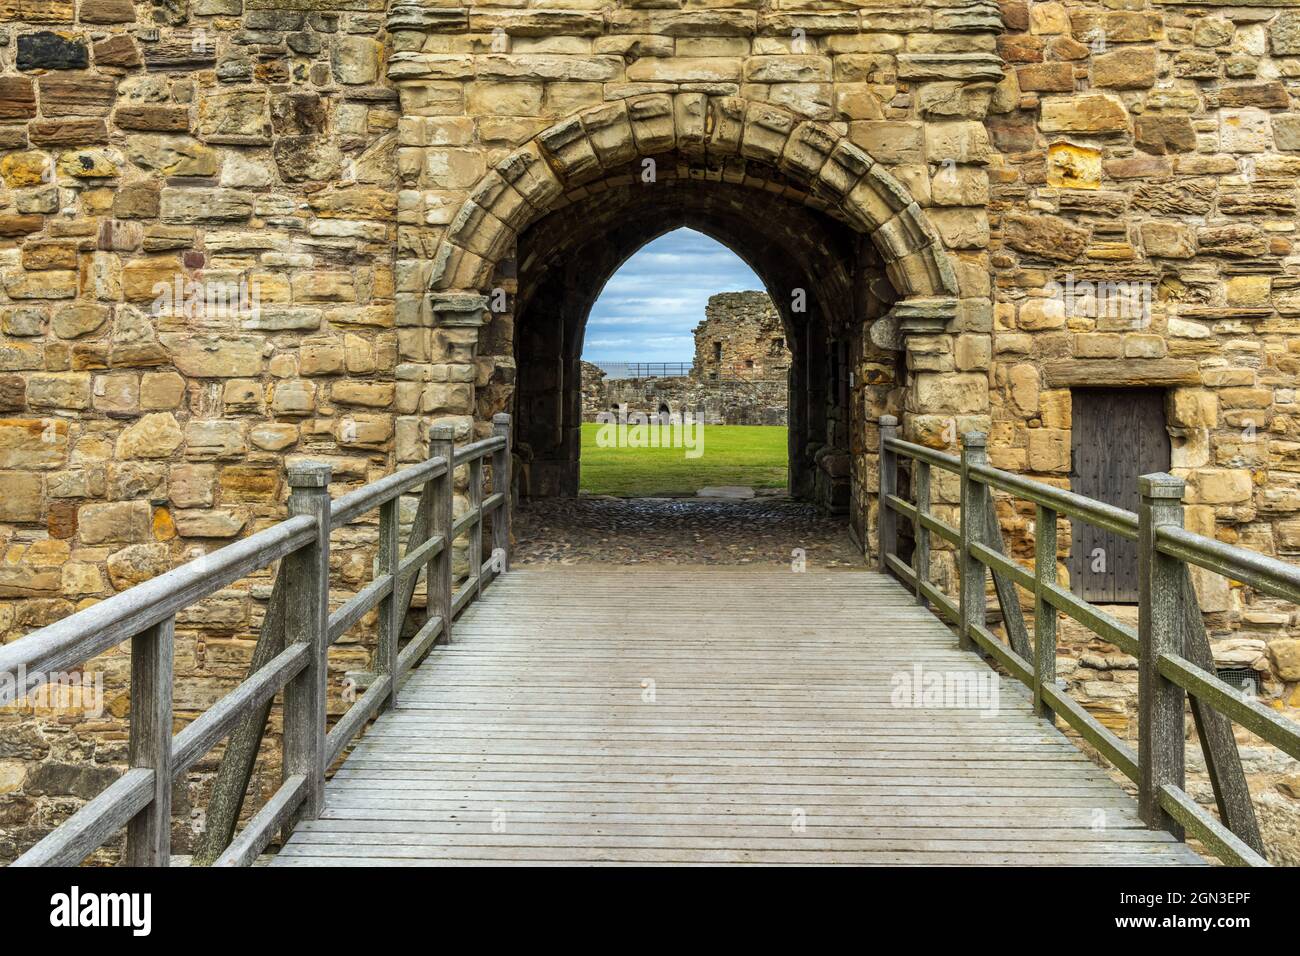 Eintritt zu den St. Andrews Castle Ruinen aus dem 13. Jahrhundert, eine beliebte Touristenattraktion in dieser berühmten Universitätsstadt, St. Andrews, Schottland. Stockfoto